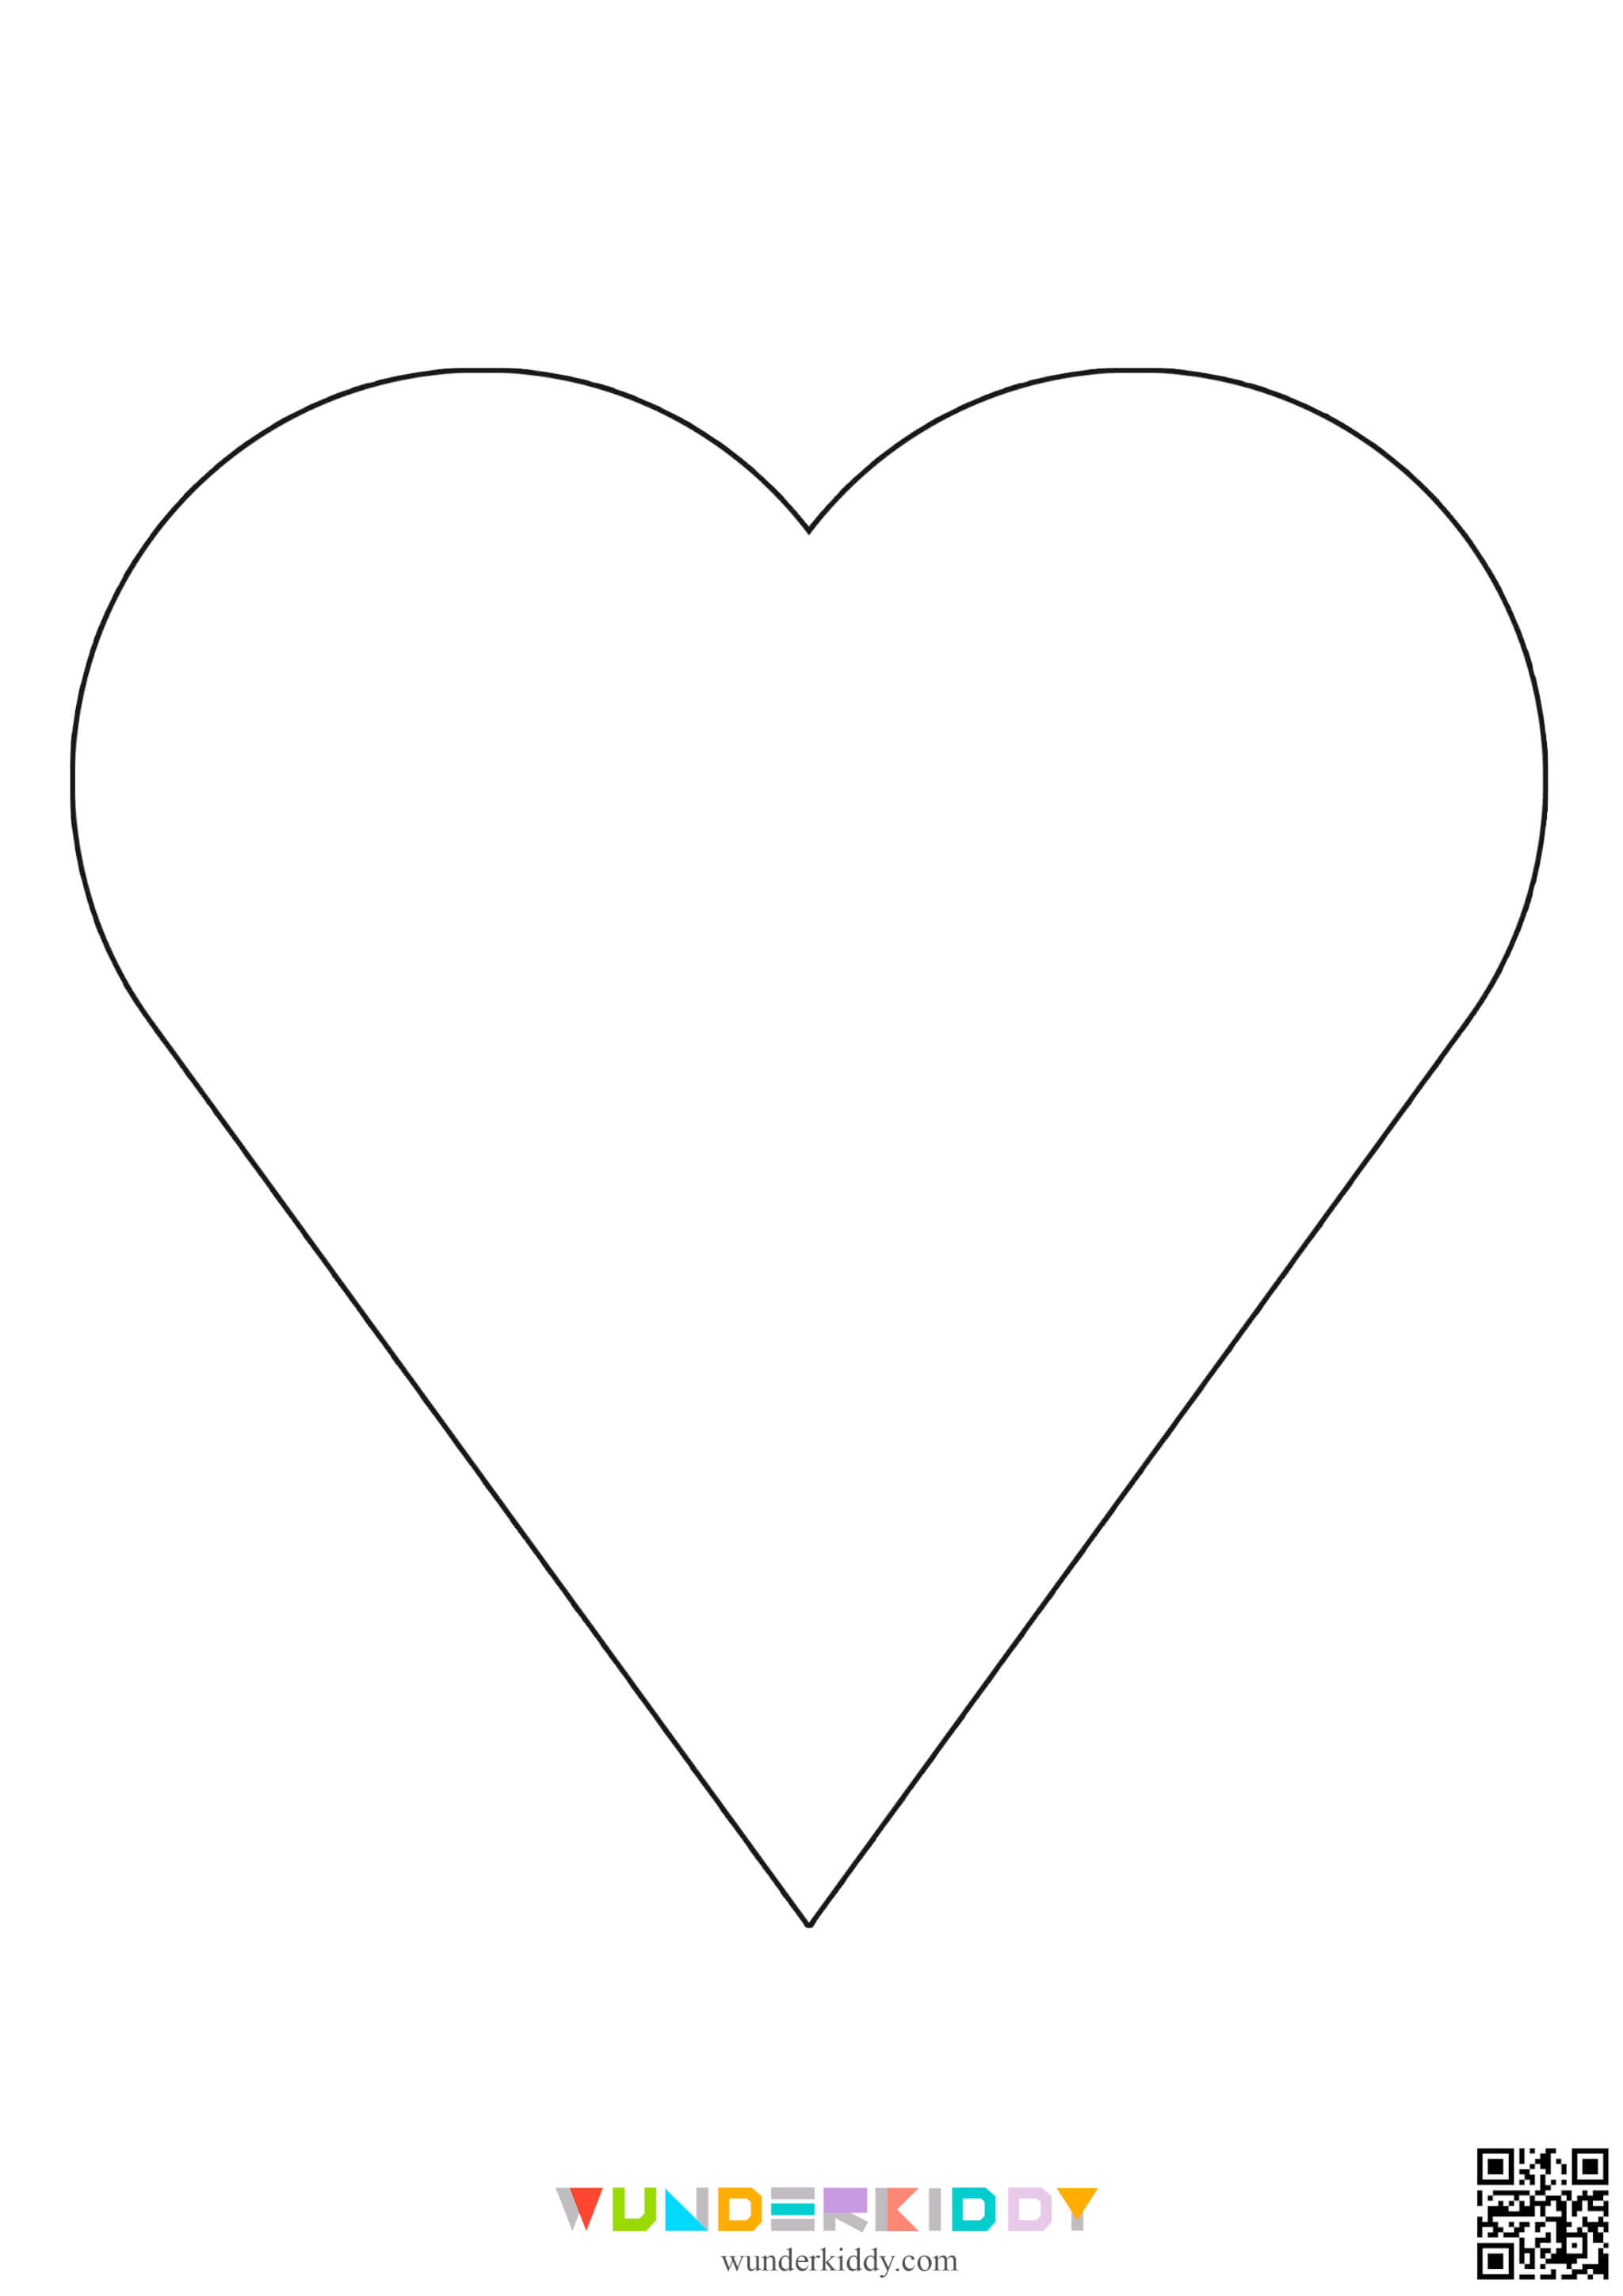 Контури та шаблони «Сердечка» для вирізання - Зображення 5